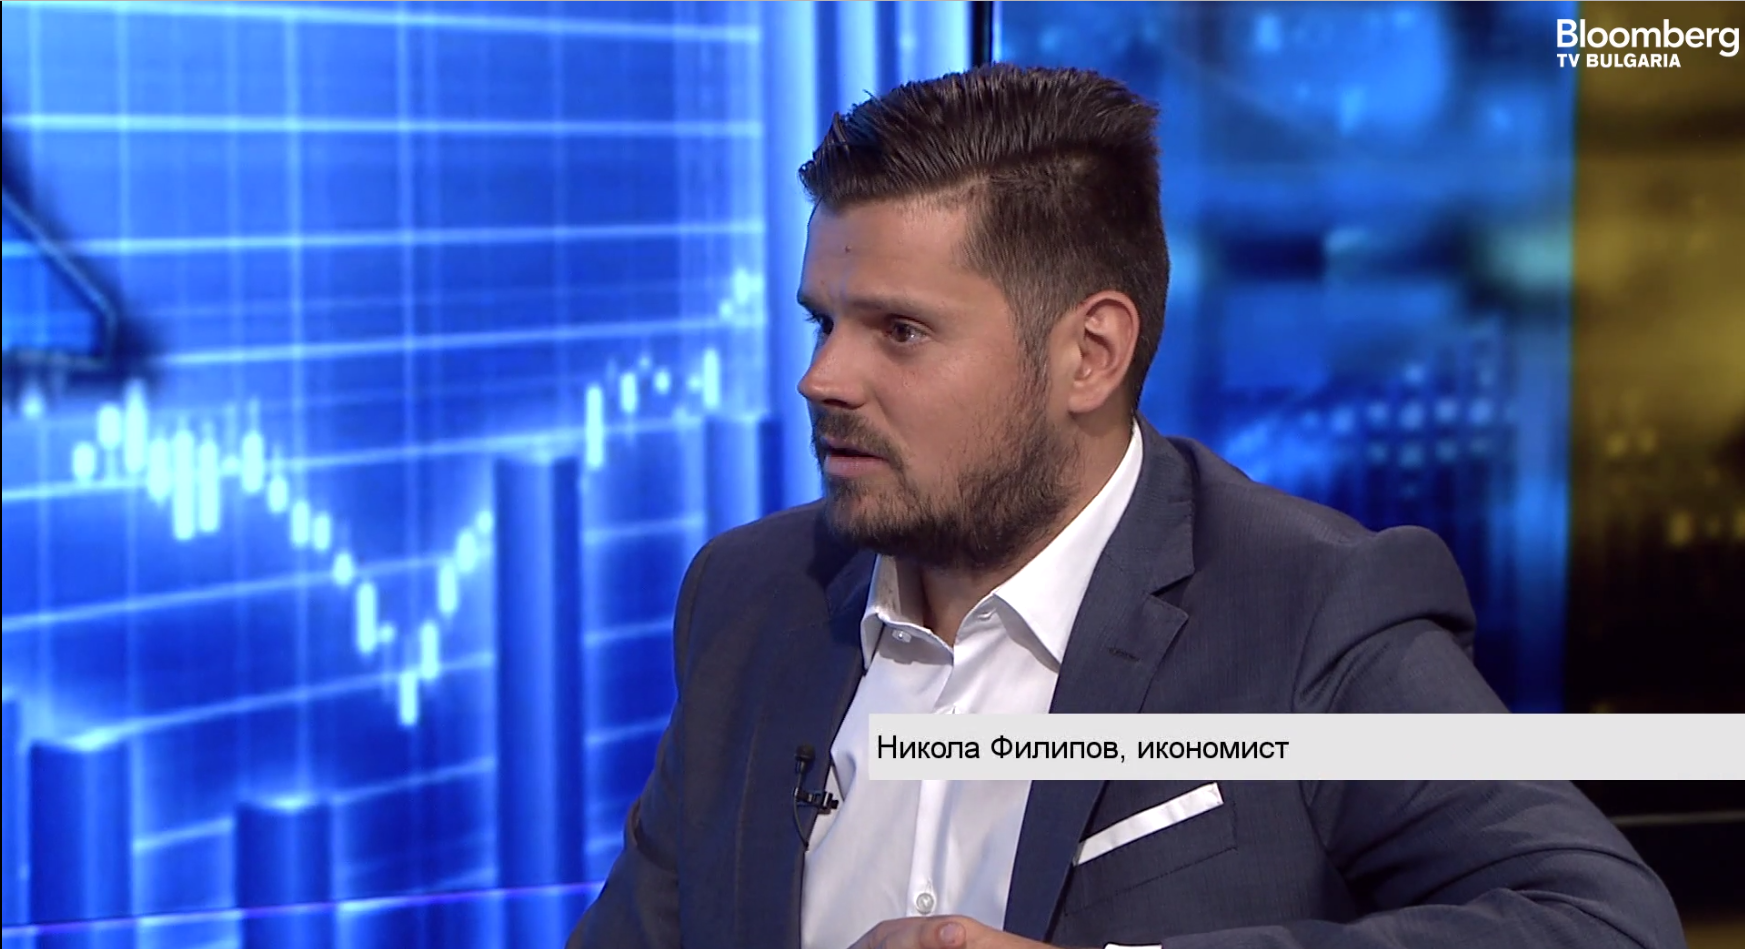 Никола Филипов: Бизнесът в България има нужда от много голяма дерегулация